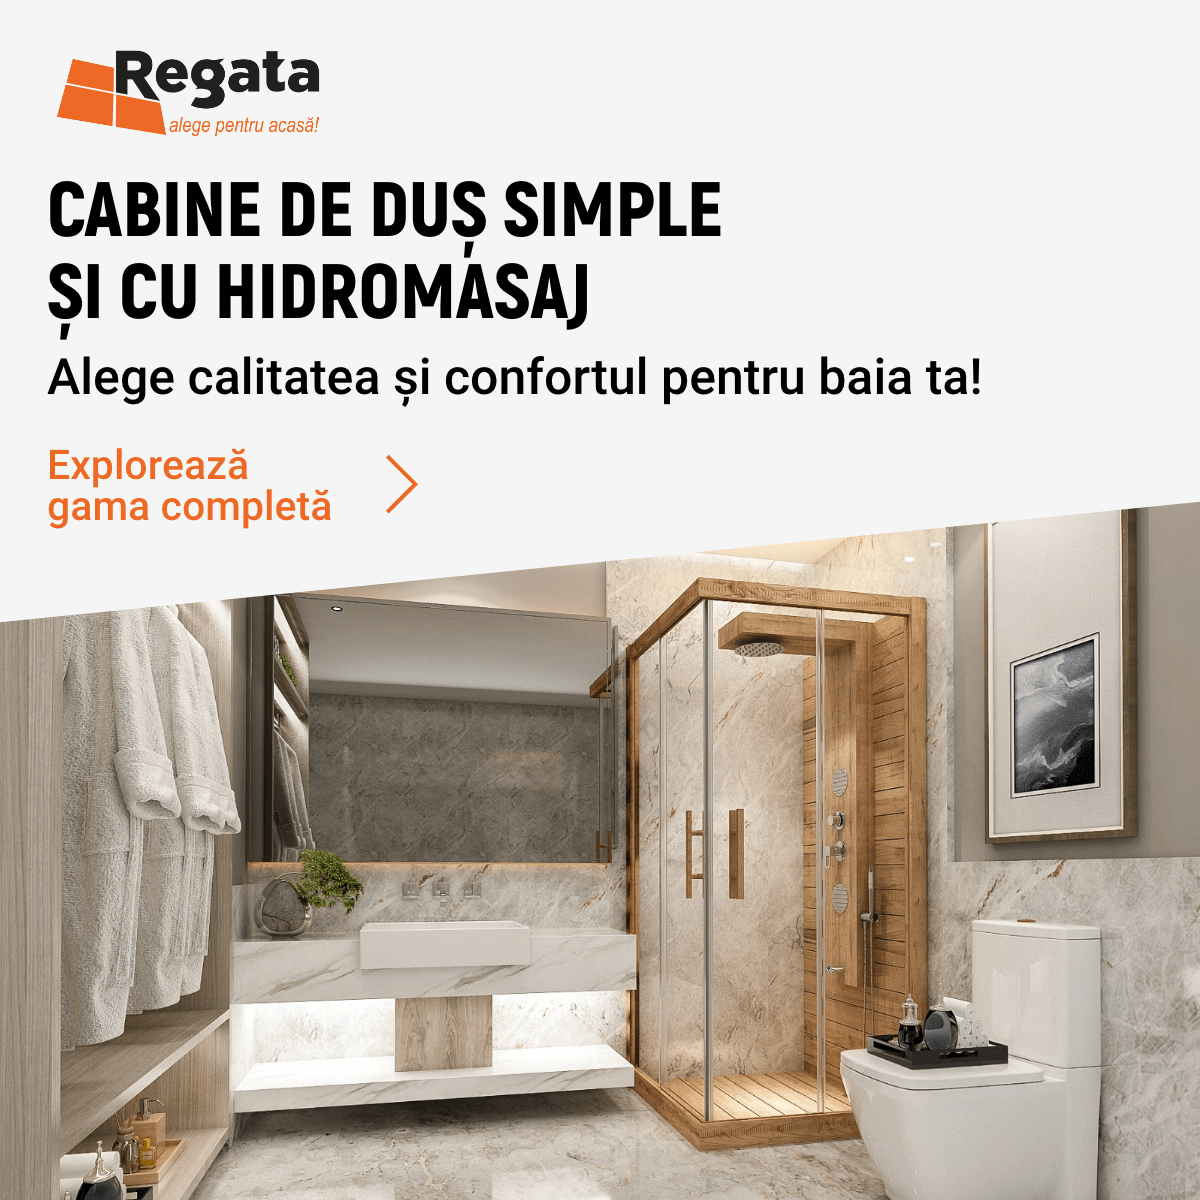 Cabine de duș simple și cu hidromasaj, alege calitatea și confortul pentru baia ta!